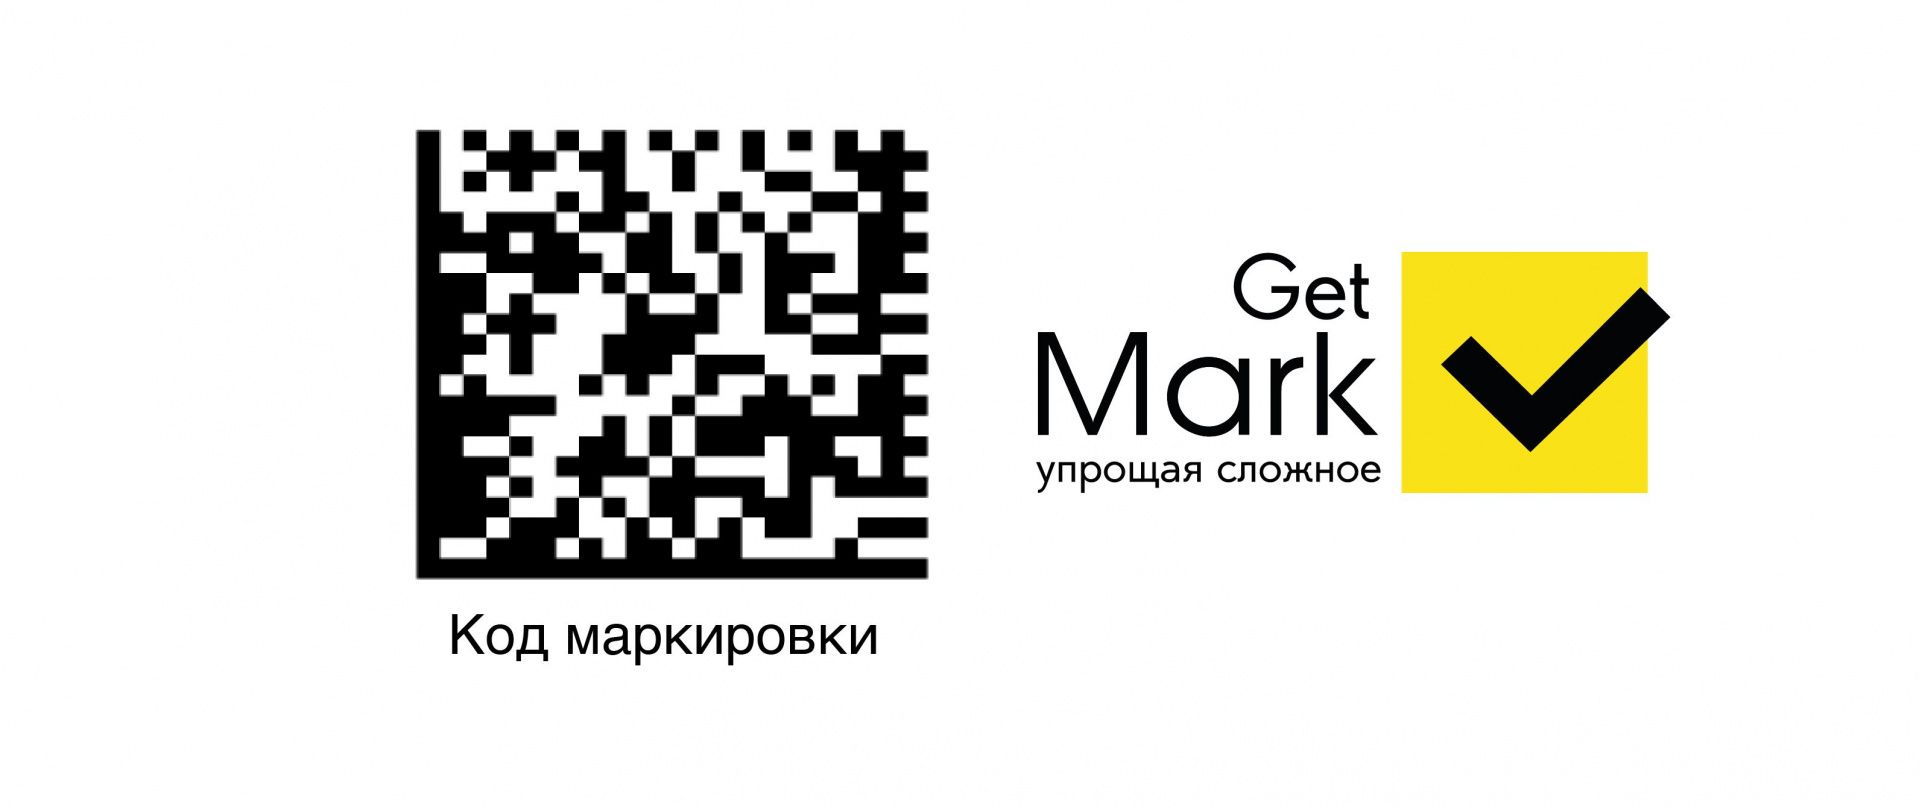 Умный интерфейс приложения GetMark